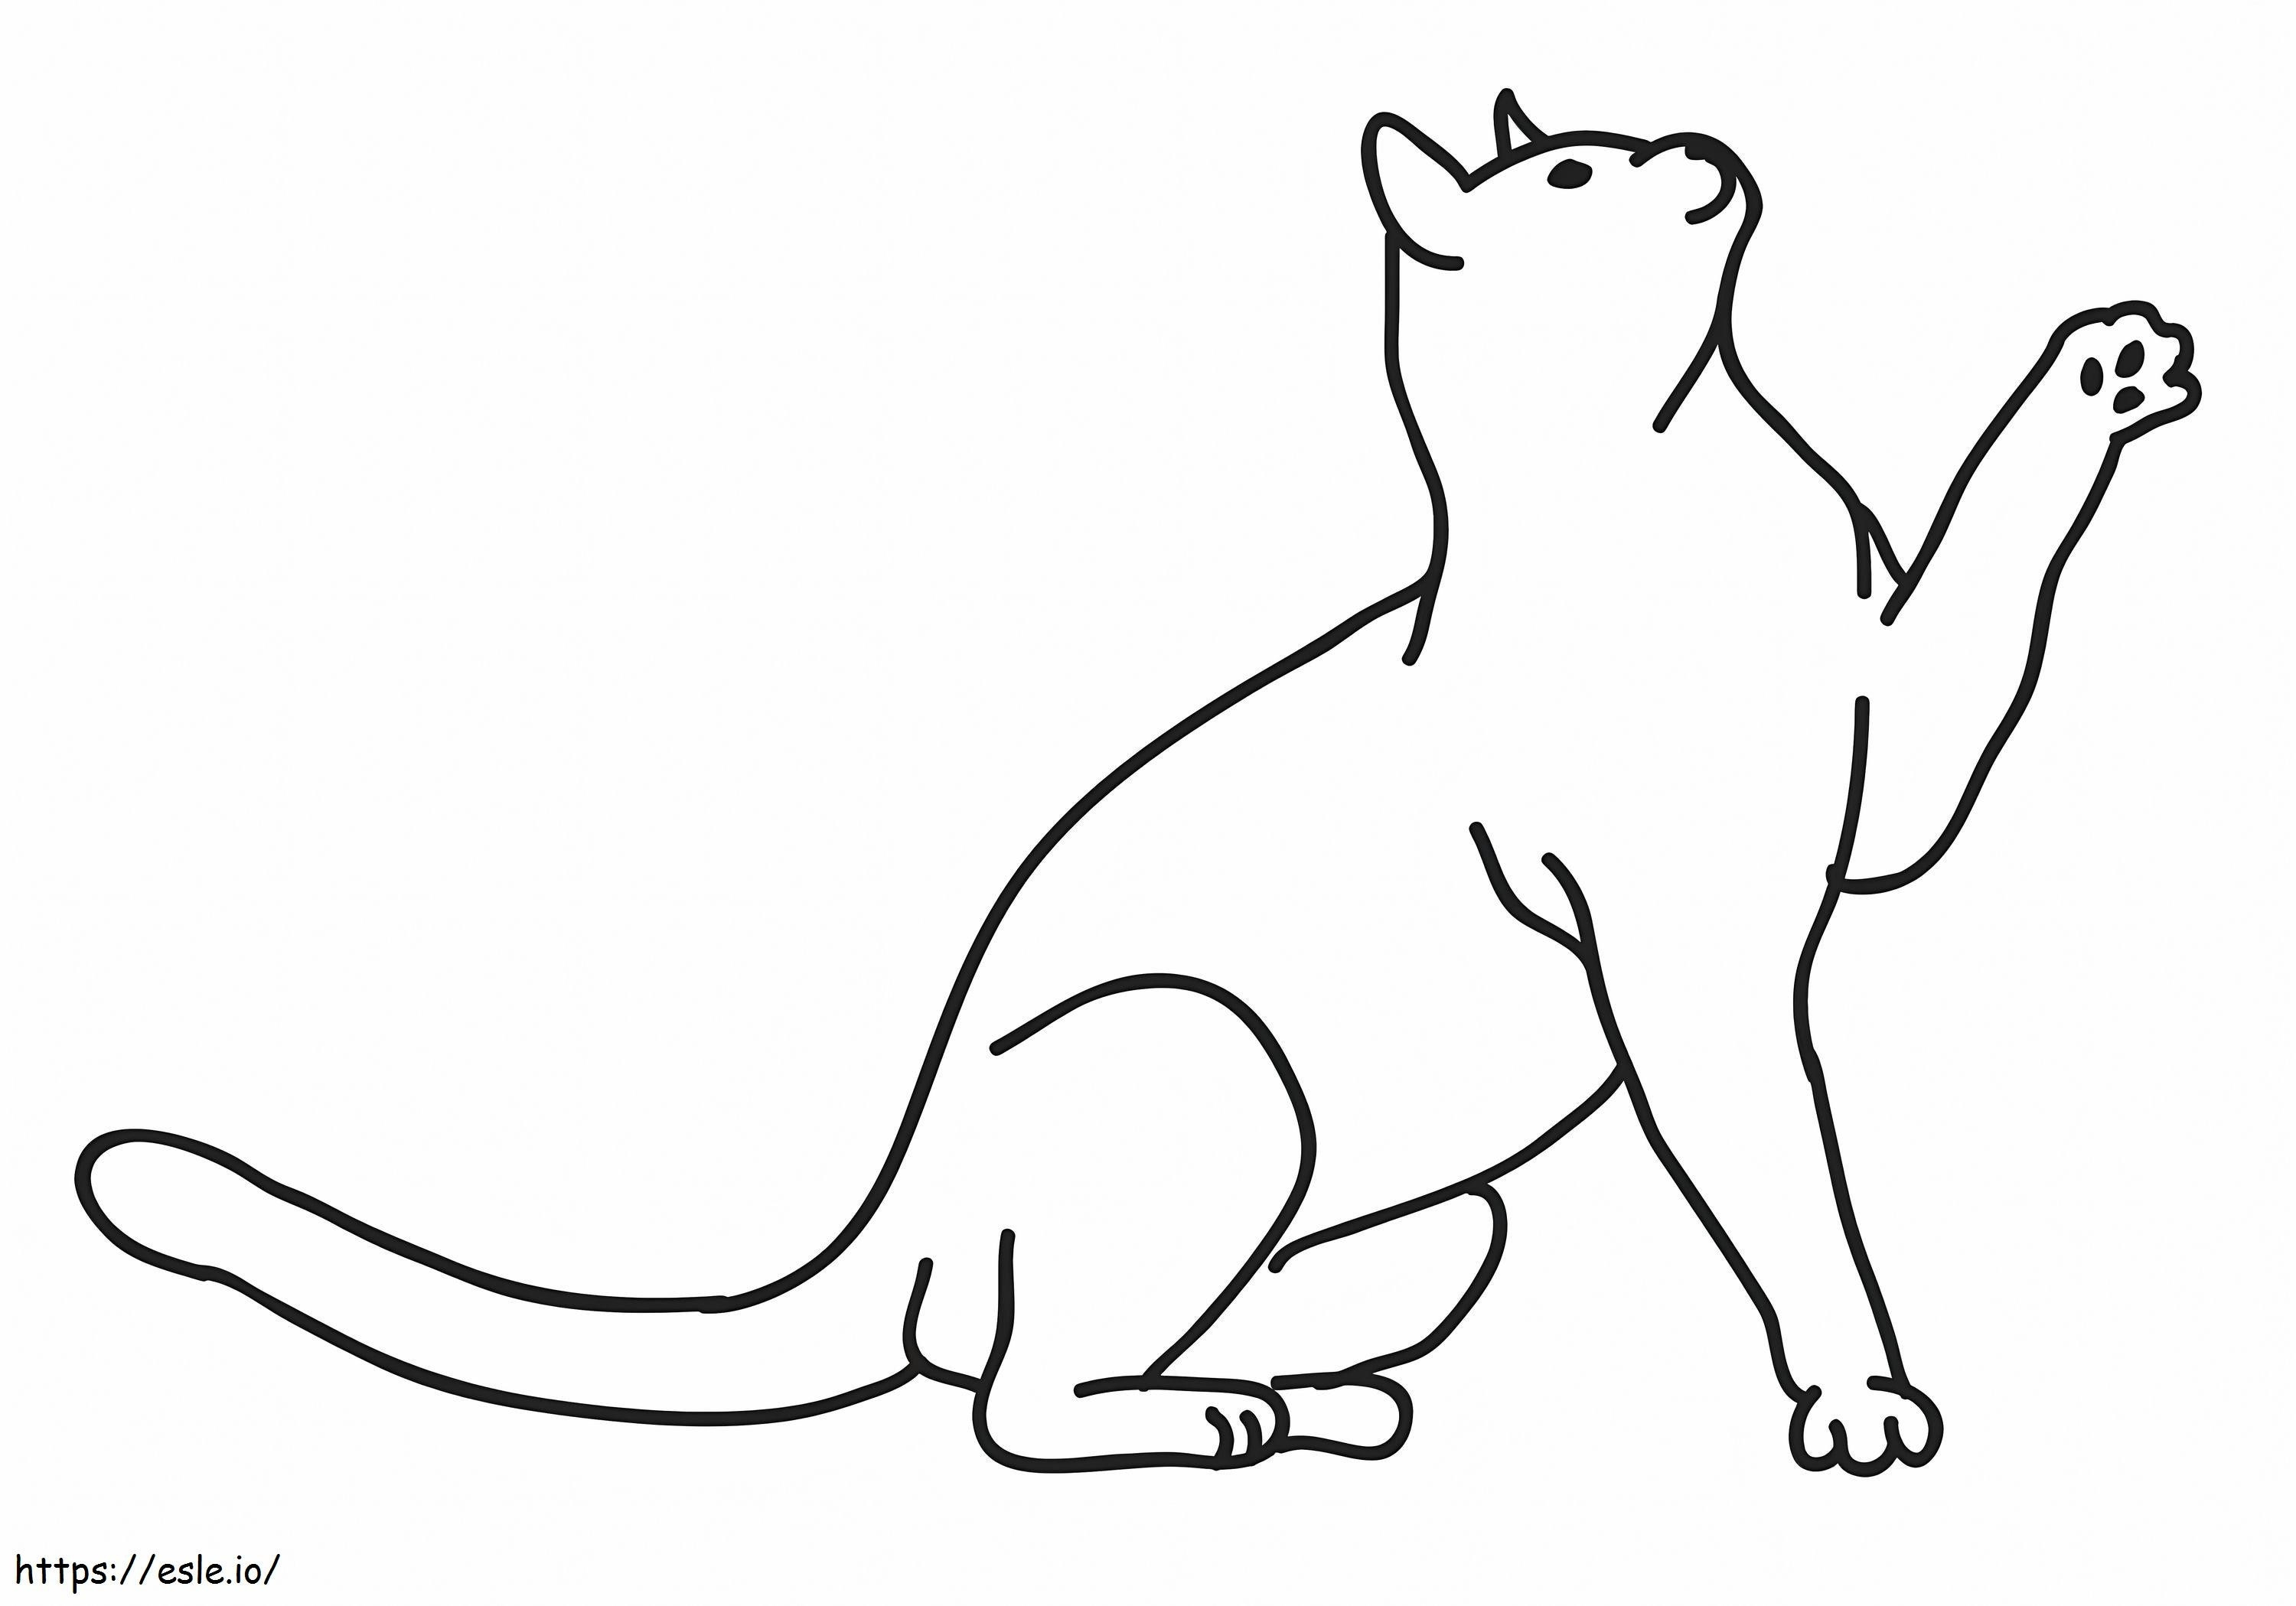 Um gato 1 para colorir